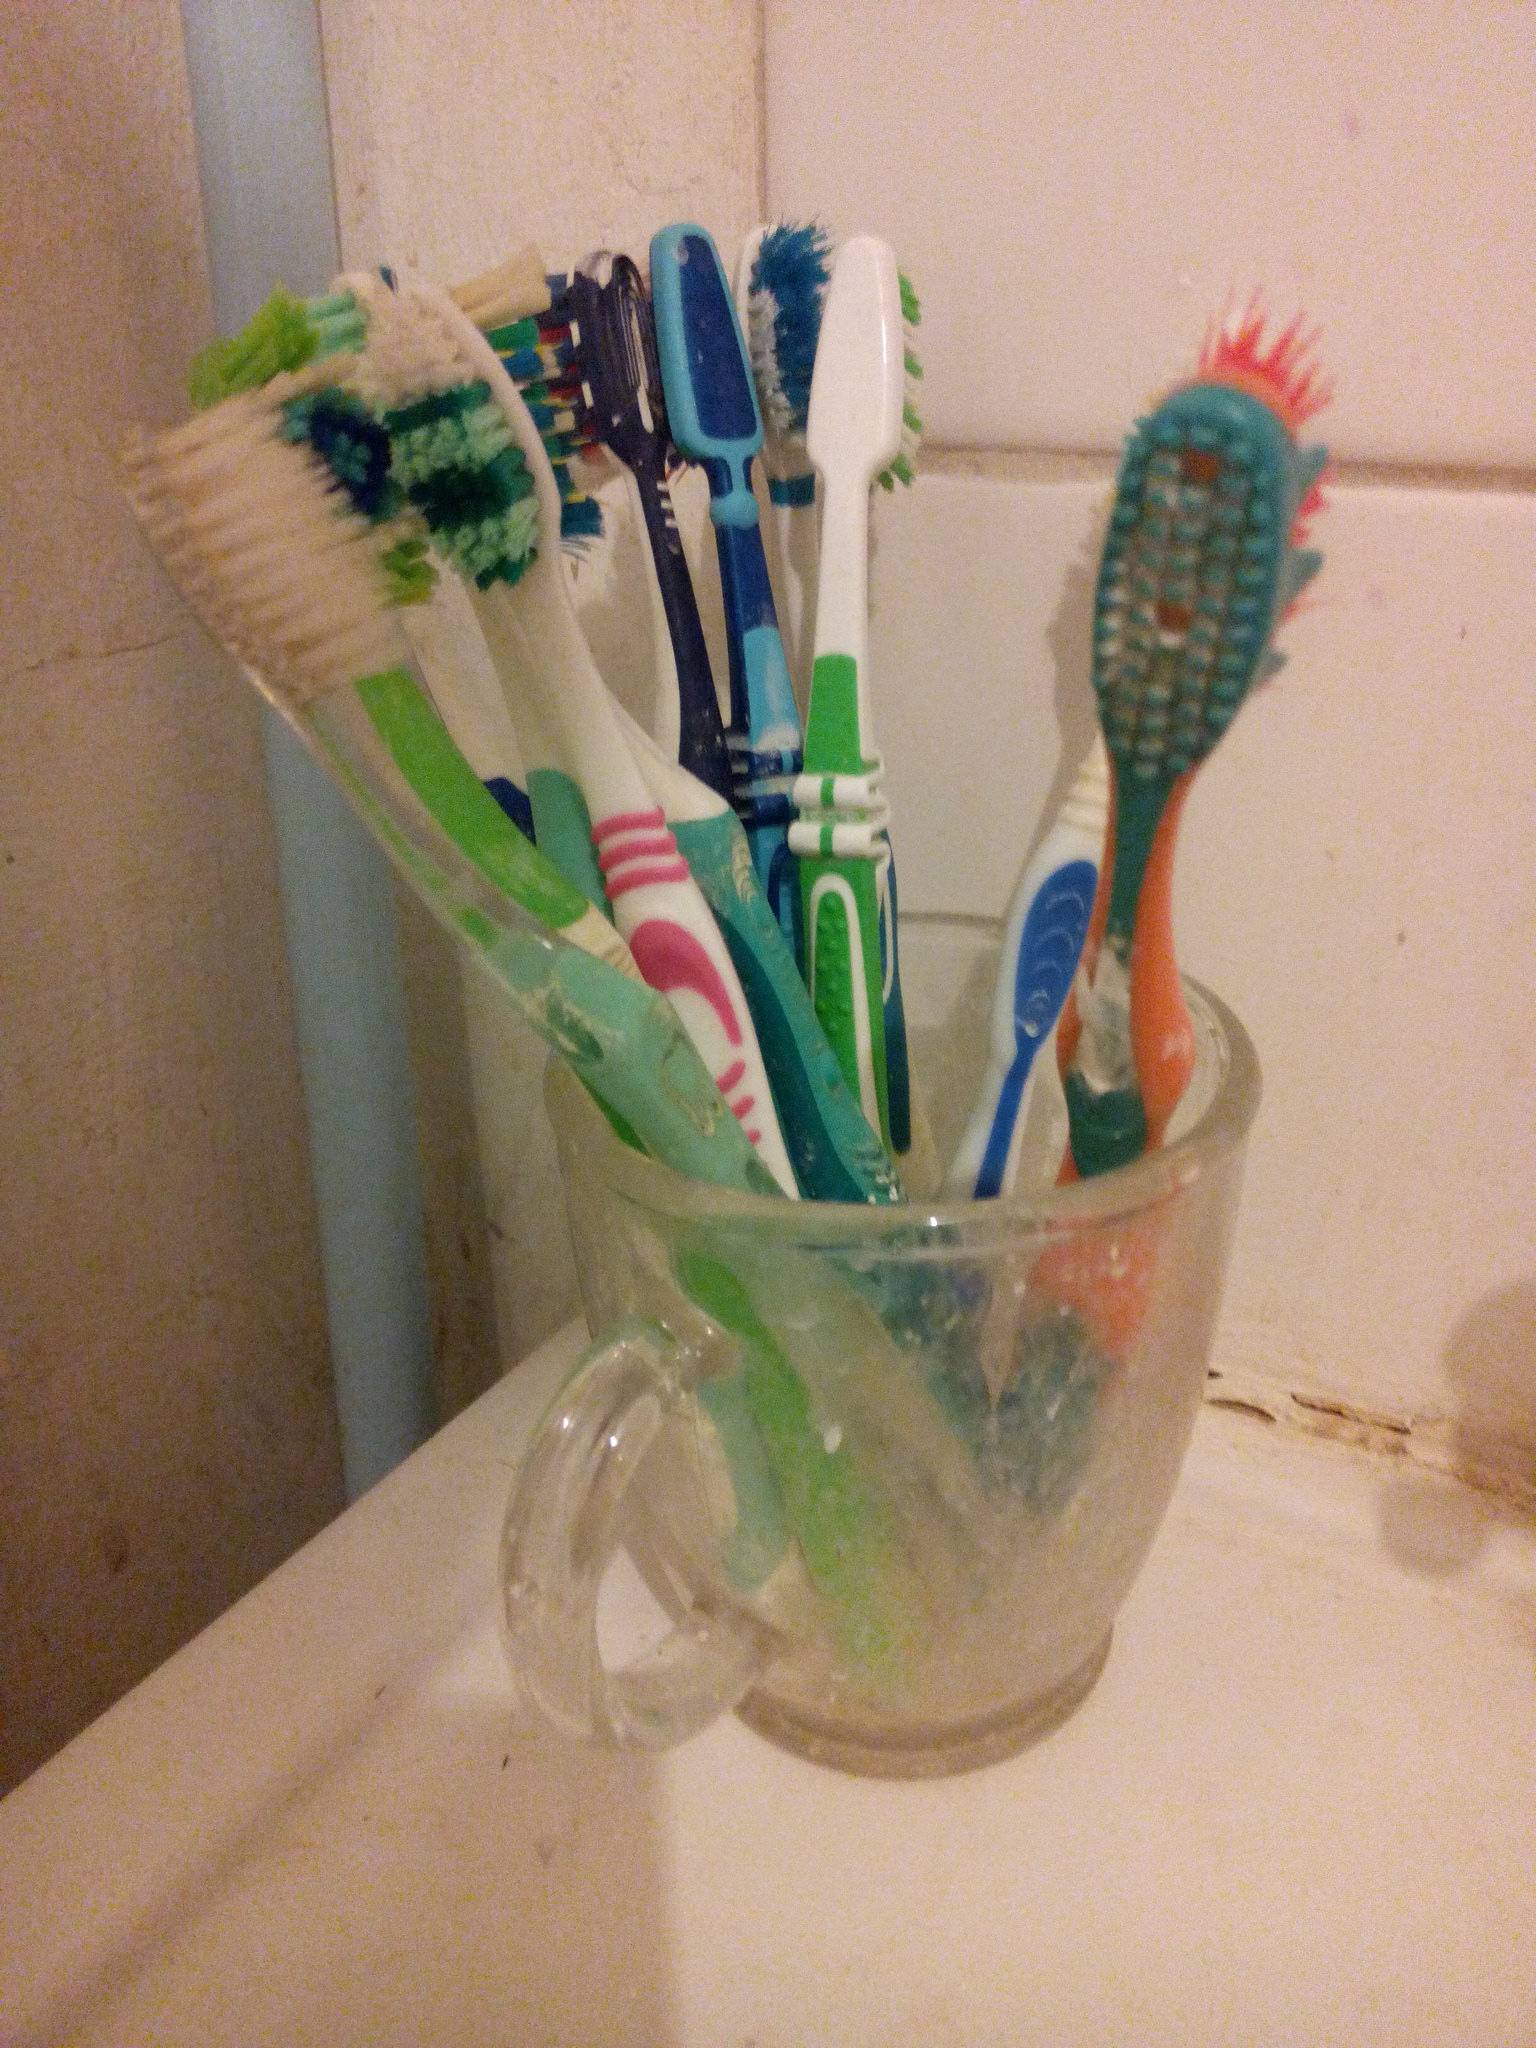 Как хранить зубные щетки, чтобы не навредить своему здоровью